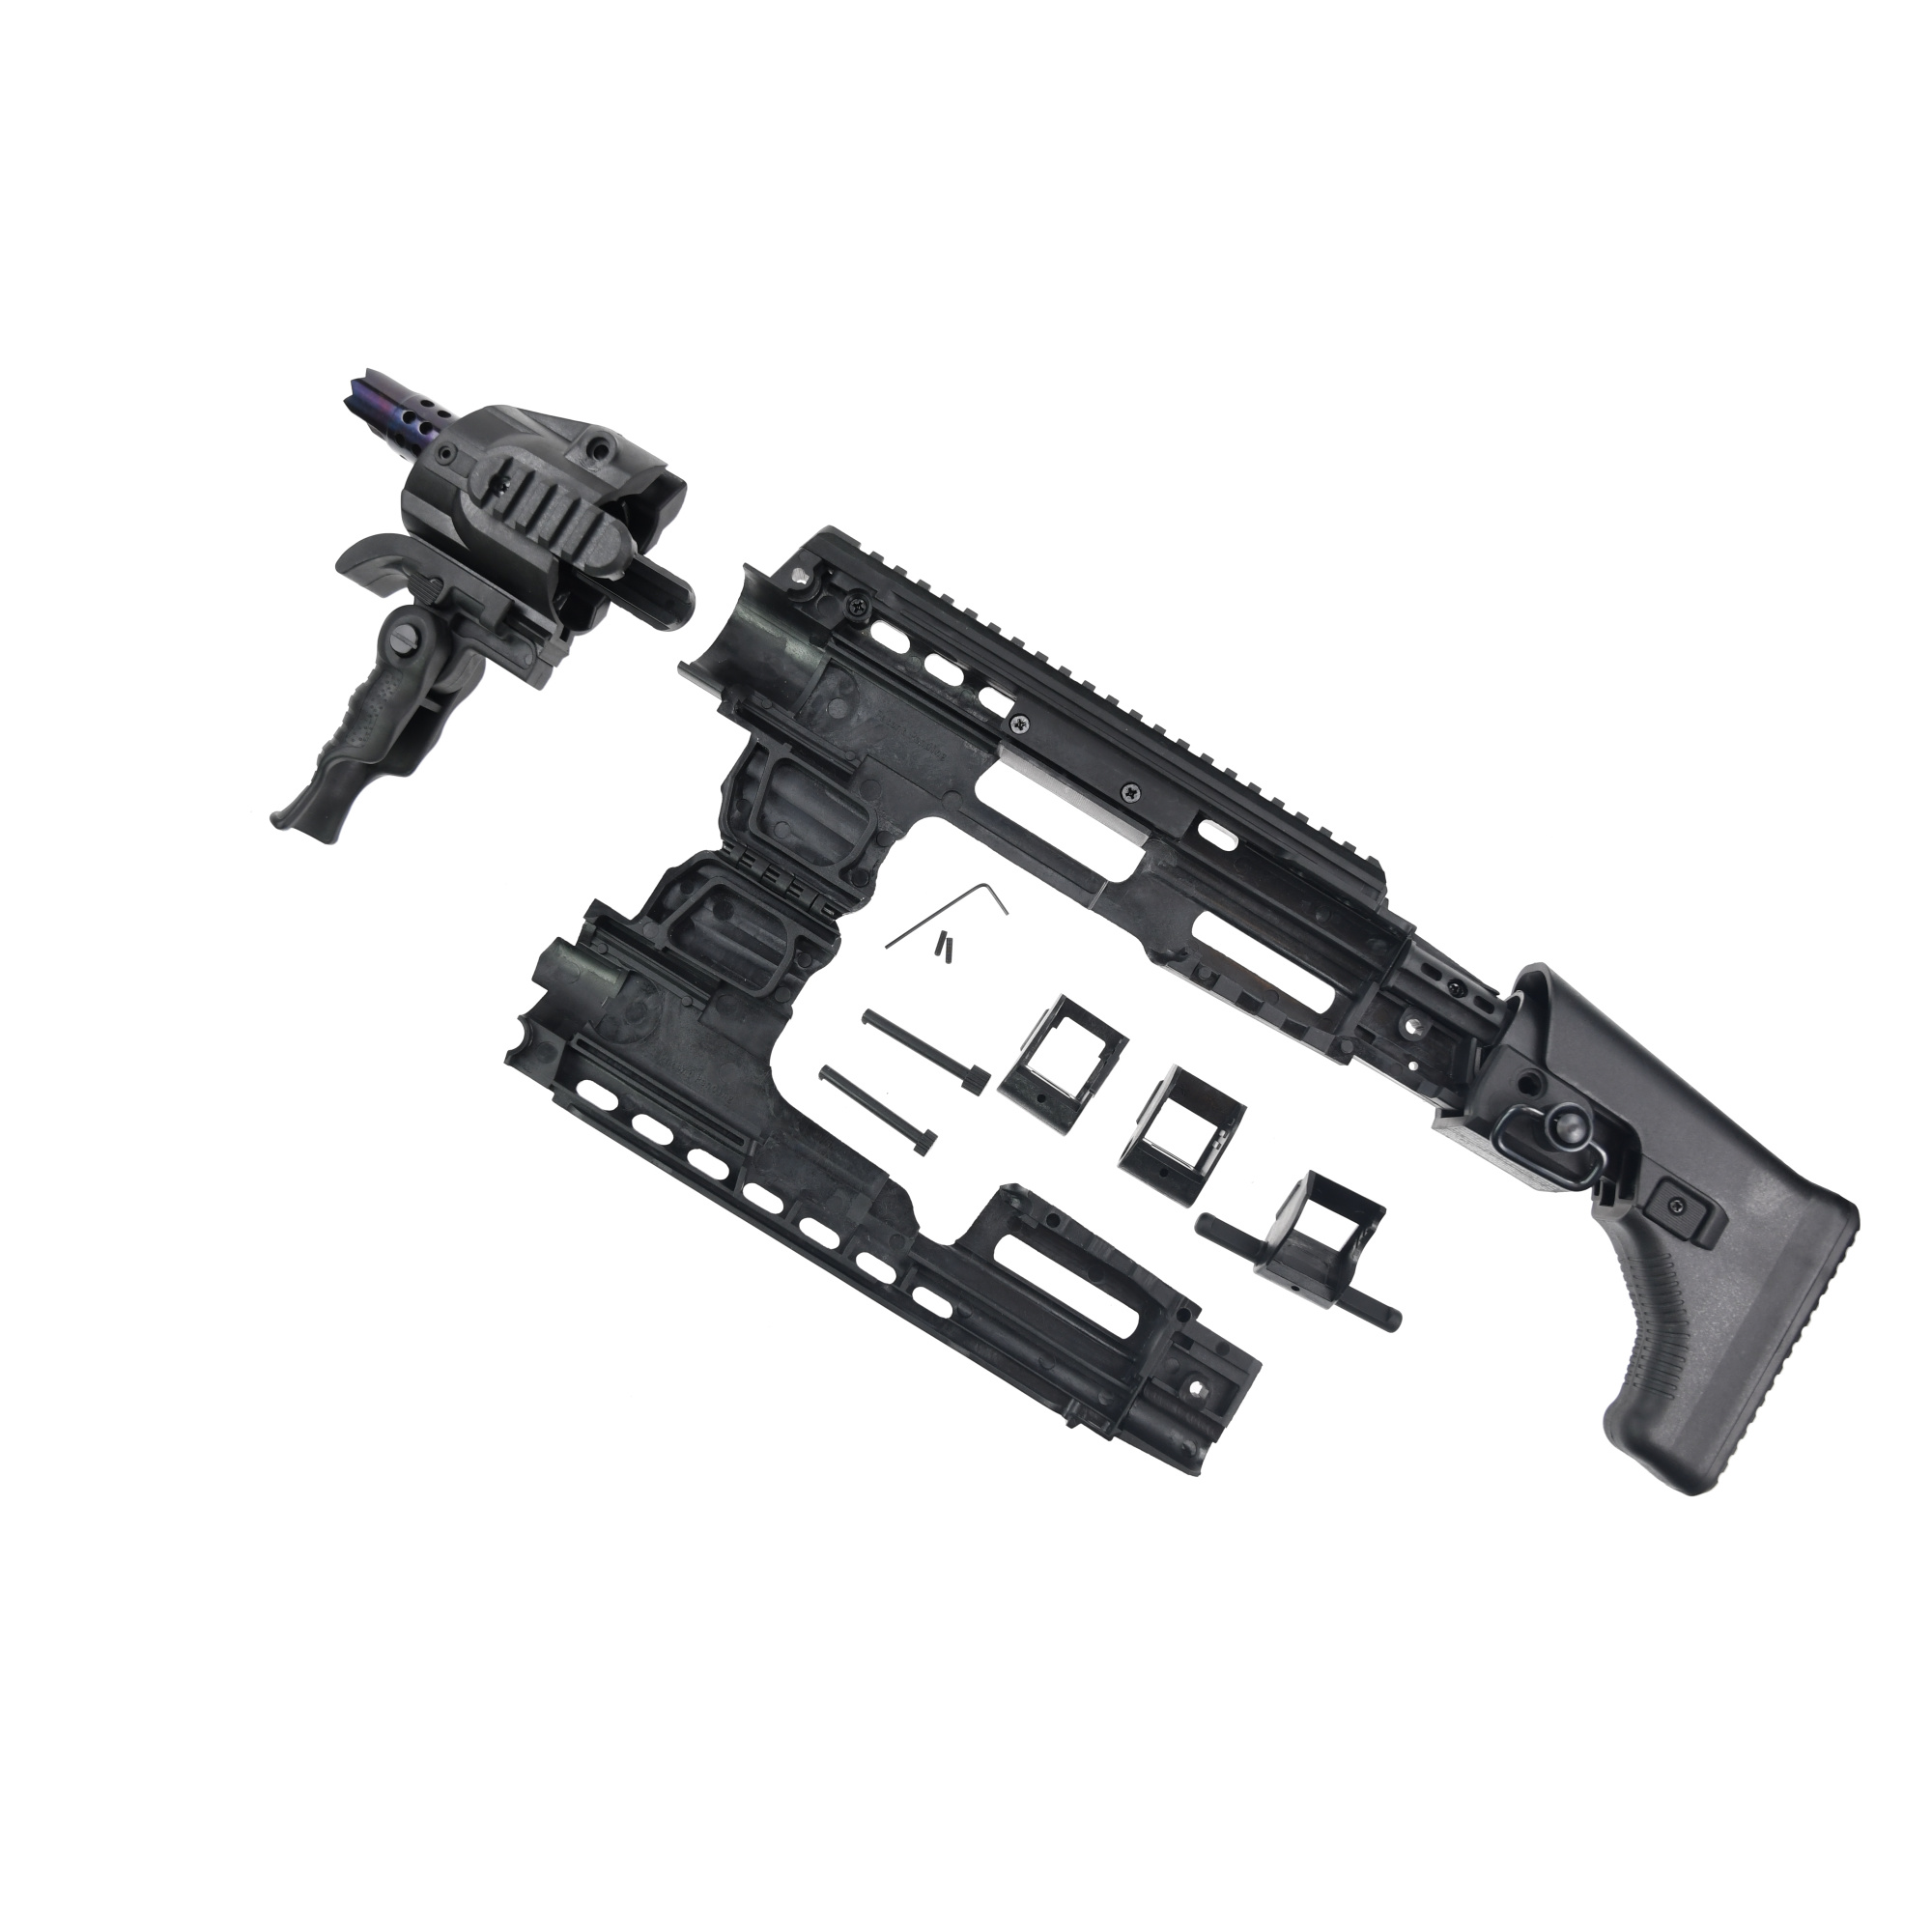 APS Glock 17/18C/19 Action Combat Carbine Conversion Kit - BK